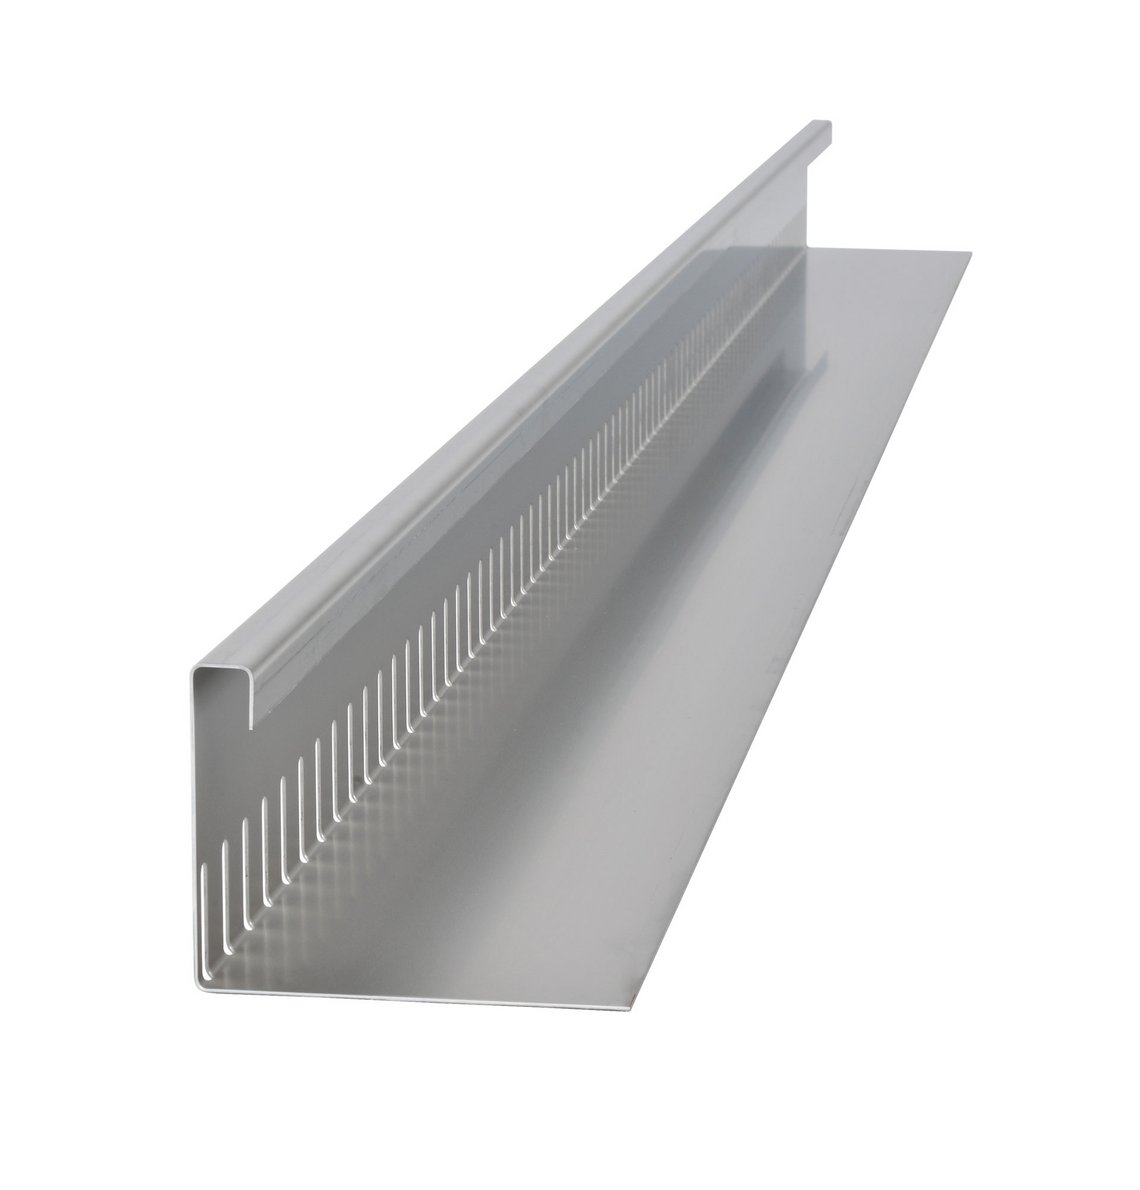 Kiesfangleiste Silex Fix von Richard Brink in fester Bauhöhe mit drei Kantungen aus Aluminium oder Edelstahl V2A